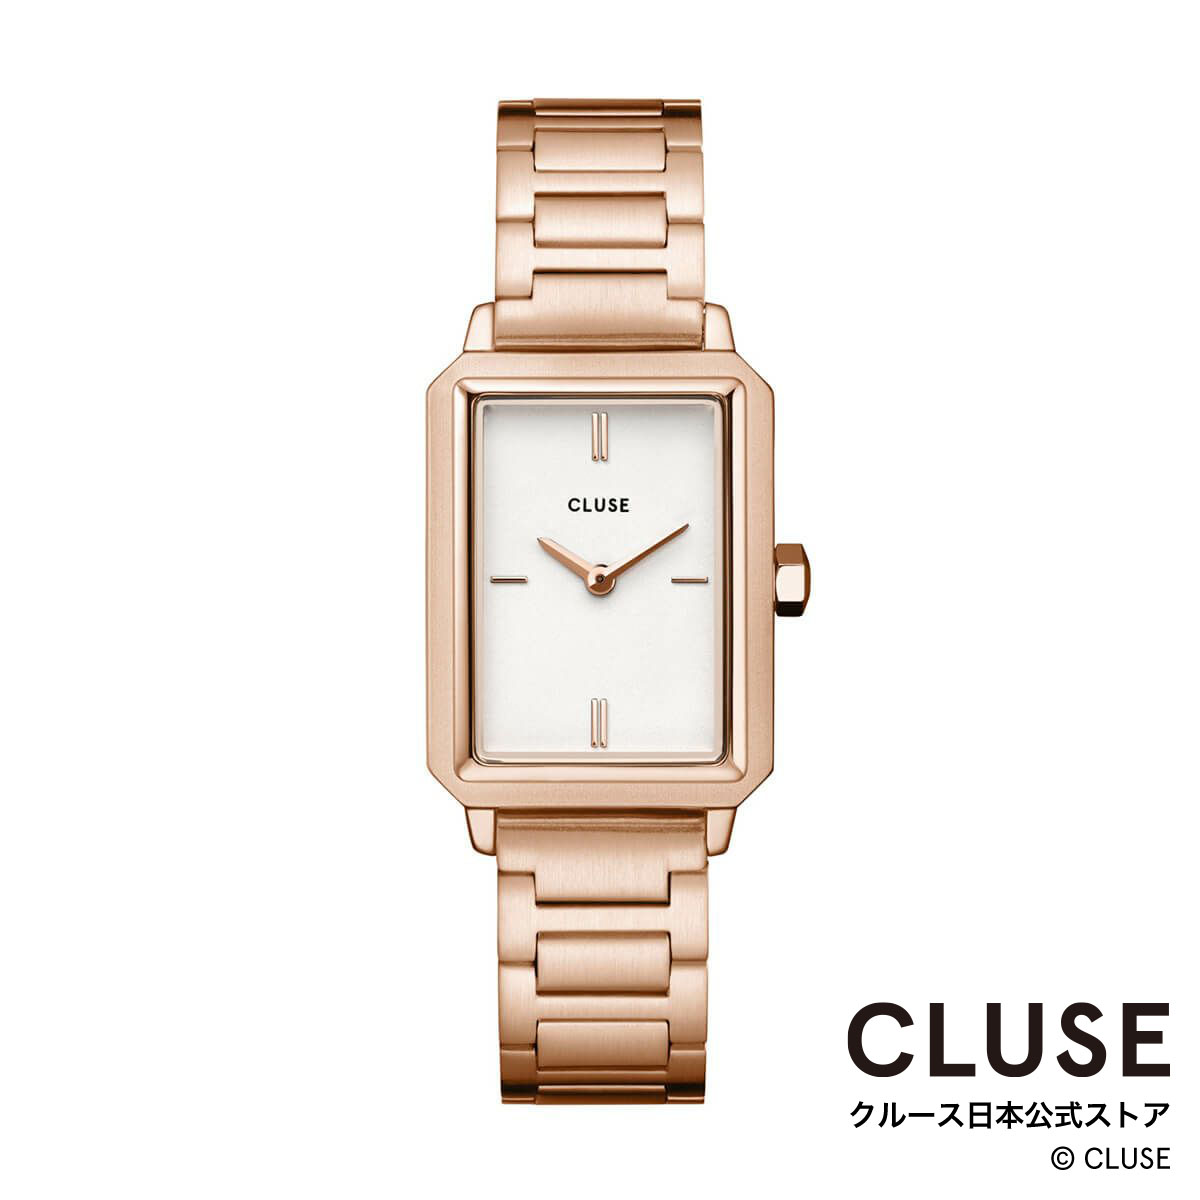 クルース ビジネス腕時計 レディース クルース CLUSE 日本公式ストア フリューレット ホワイト ローズゴールド レディース 女性 腕時計 時計 防水 クォーツ